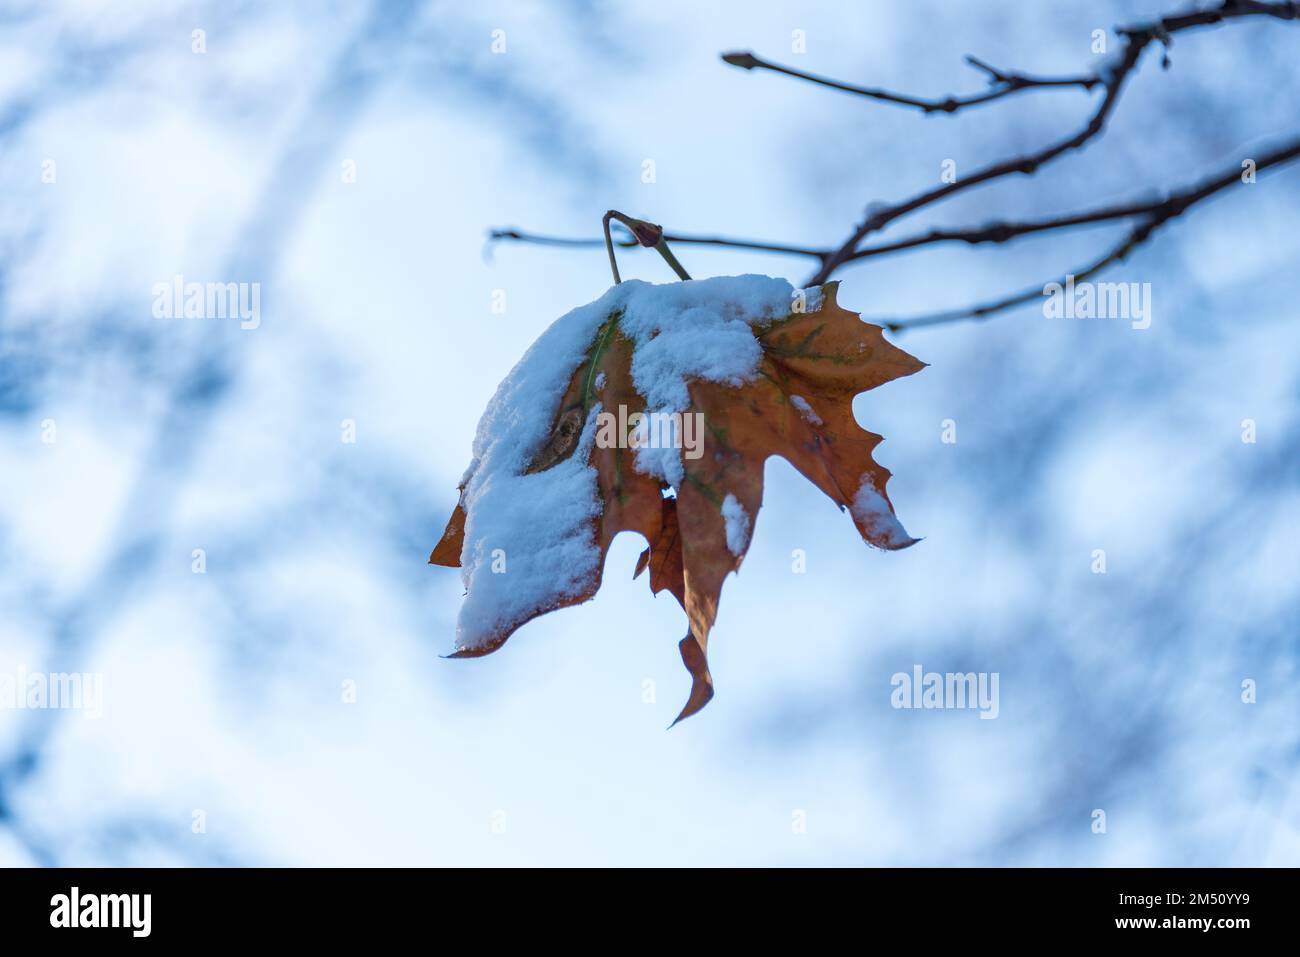 Eingefrorenes Laub an einem Baum nach dem ersten Wintereinbruch Foto Stock